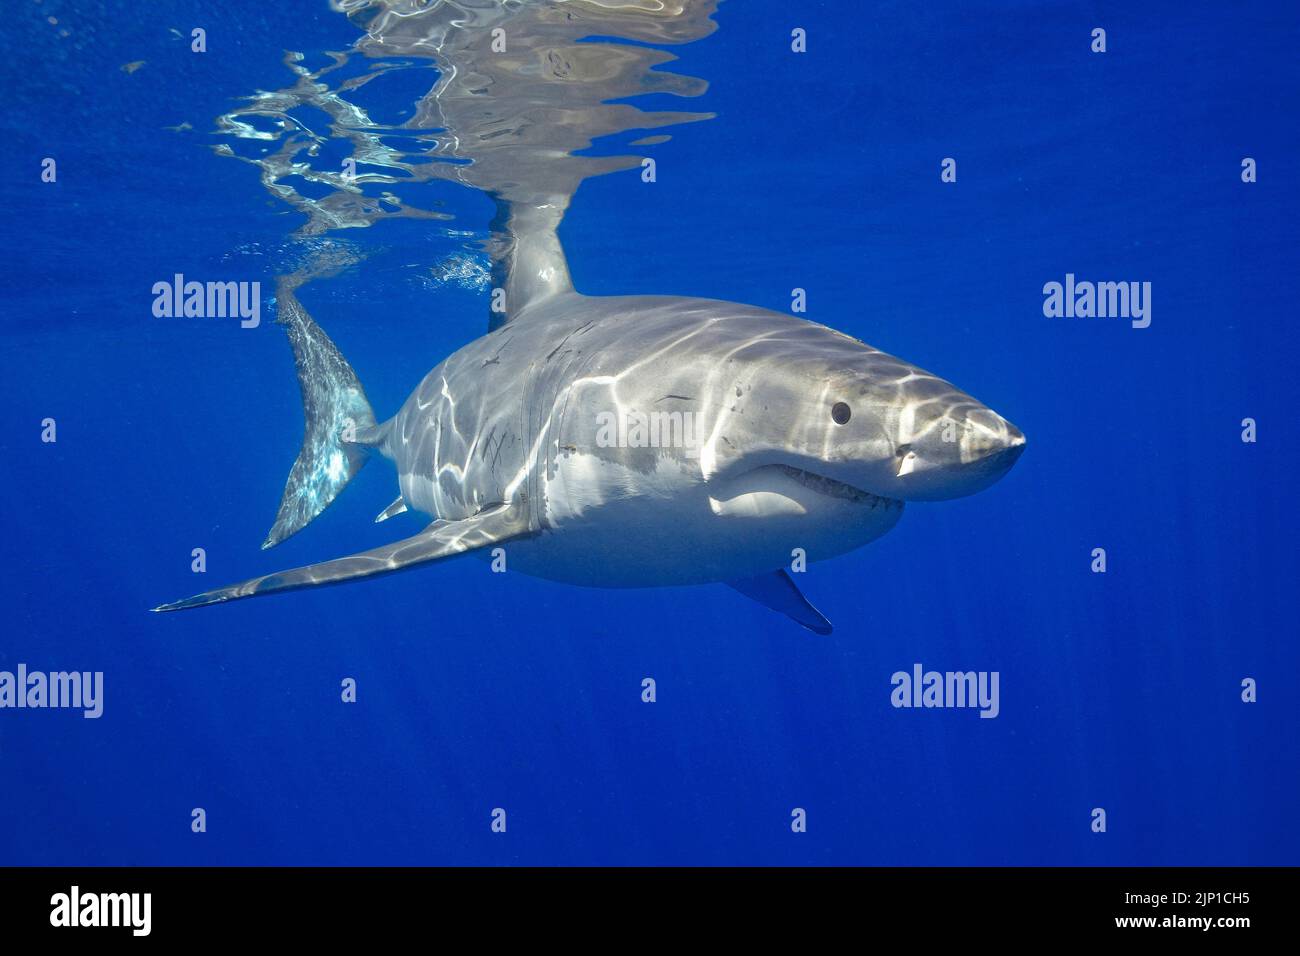 Grand requin blanc (Carcharodon carcharias) en eau bleue, île Guadalupe, Mexique, Océan Pacifique Banque D'Images